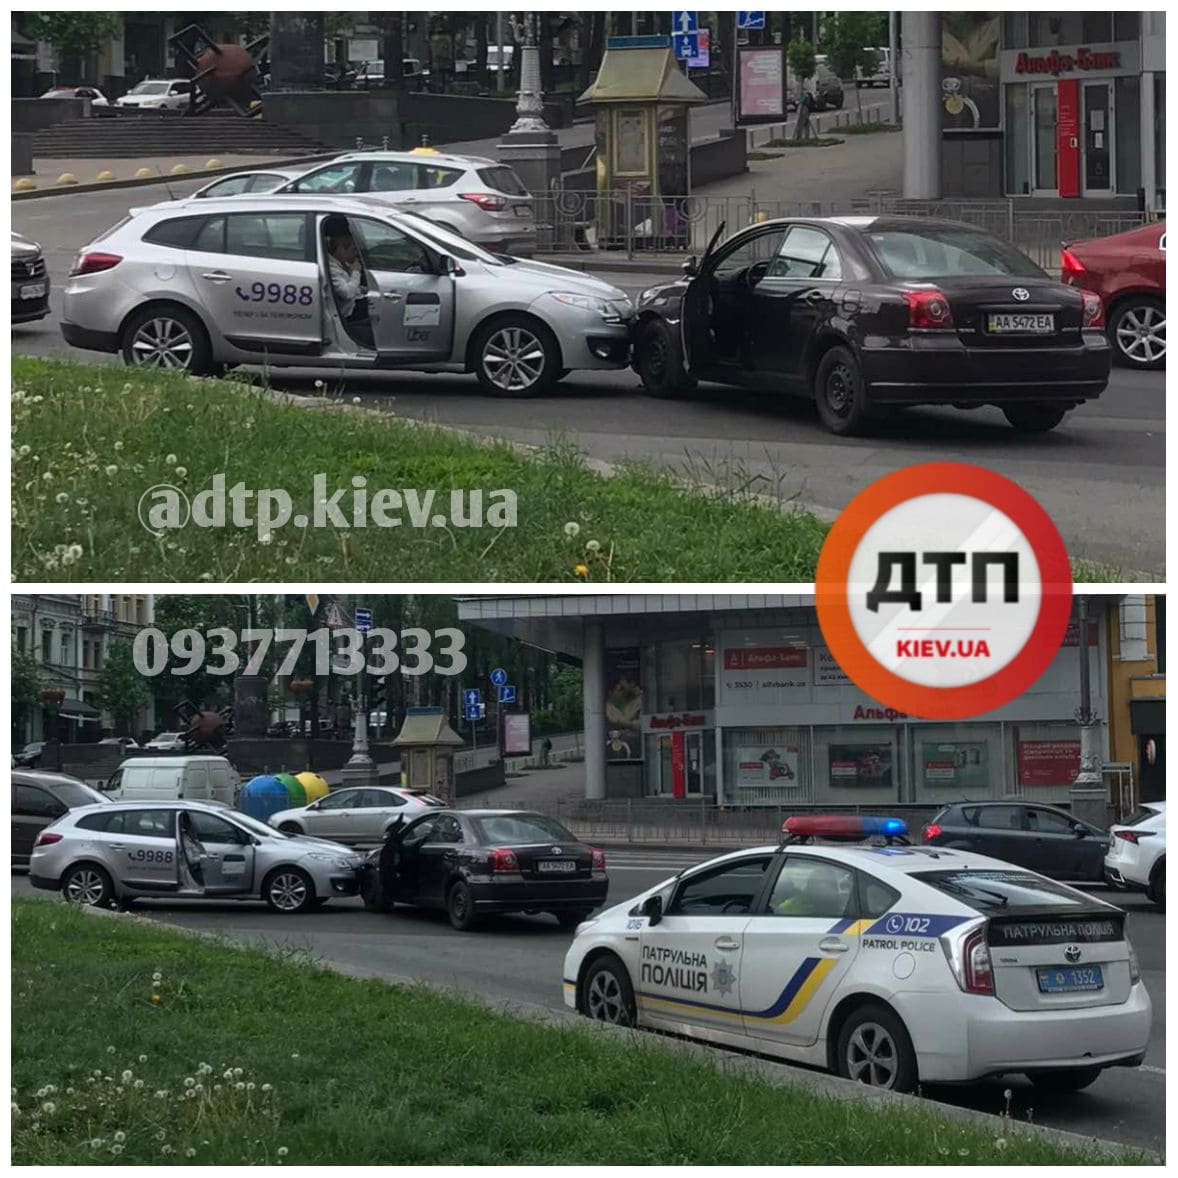 В Киеве на Бессарабской площади произошло ДТП с участием автомобиля службы такси Uber и Toyota